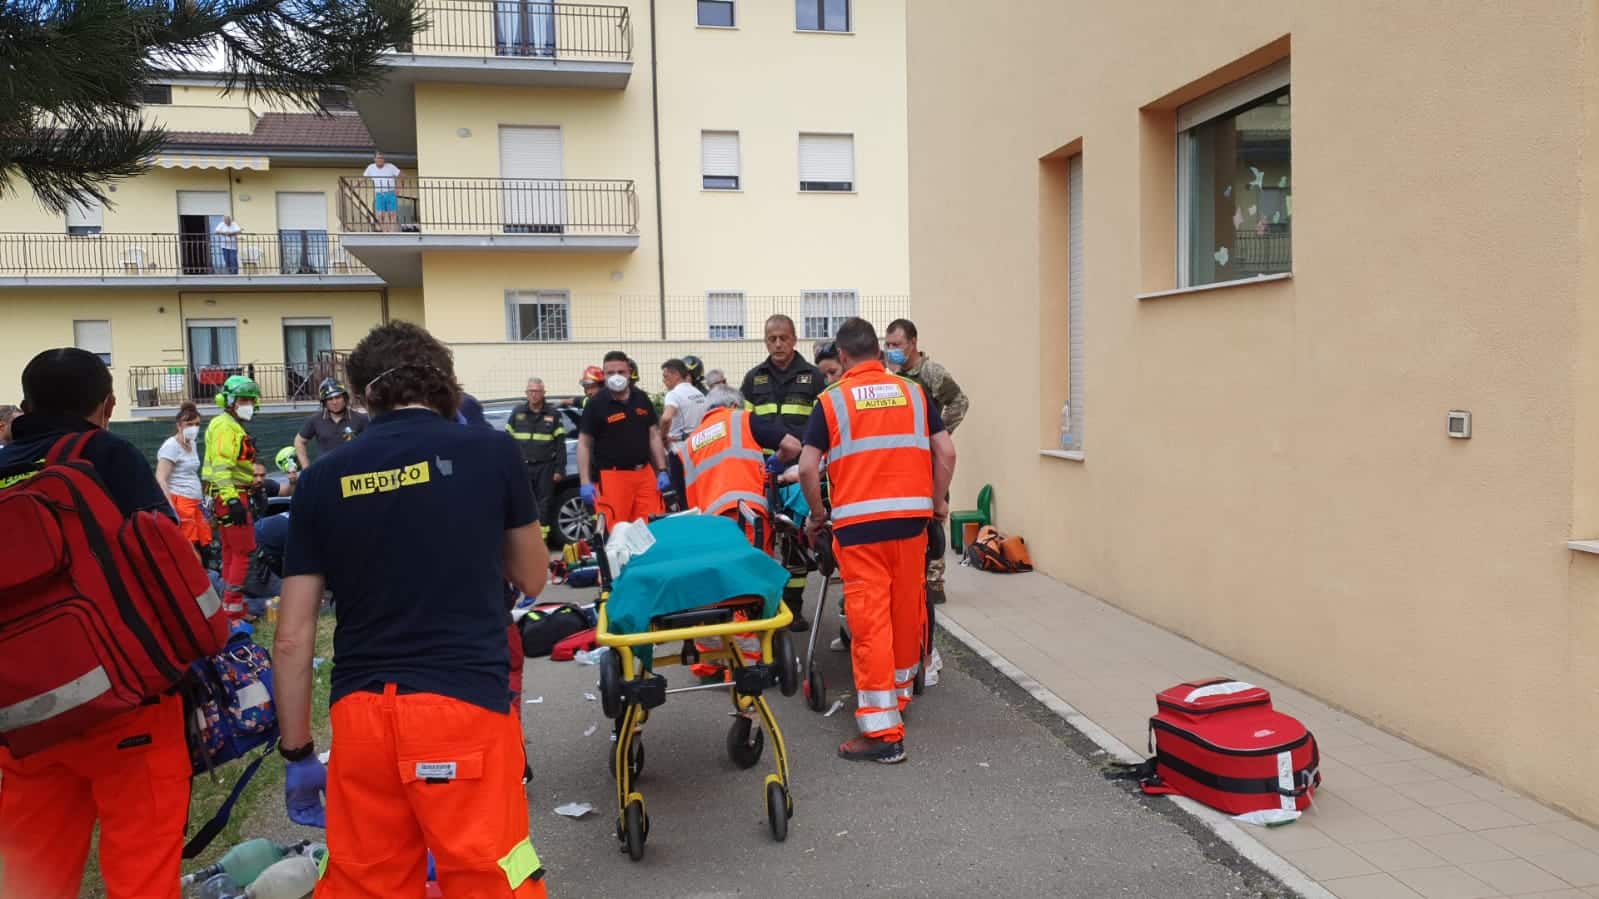 Tragedia all'asilo dell'Aquila, Sindaco Biondi: "domani sarà lutto cittadino"